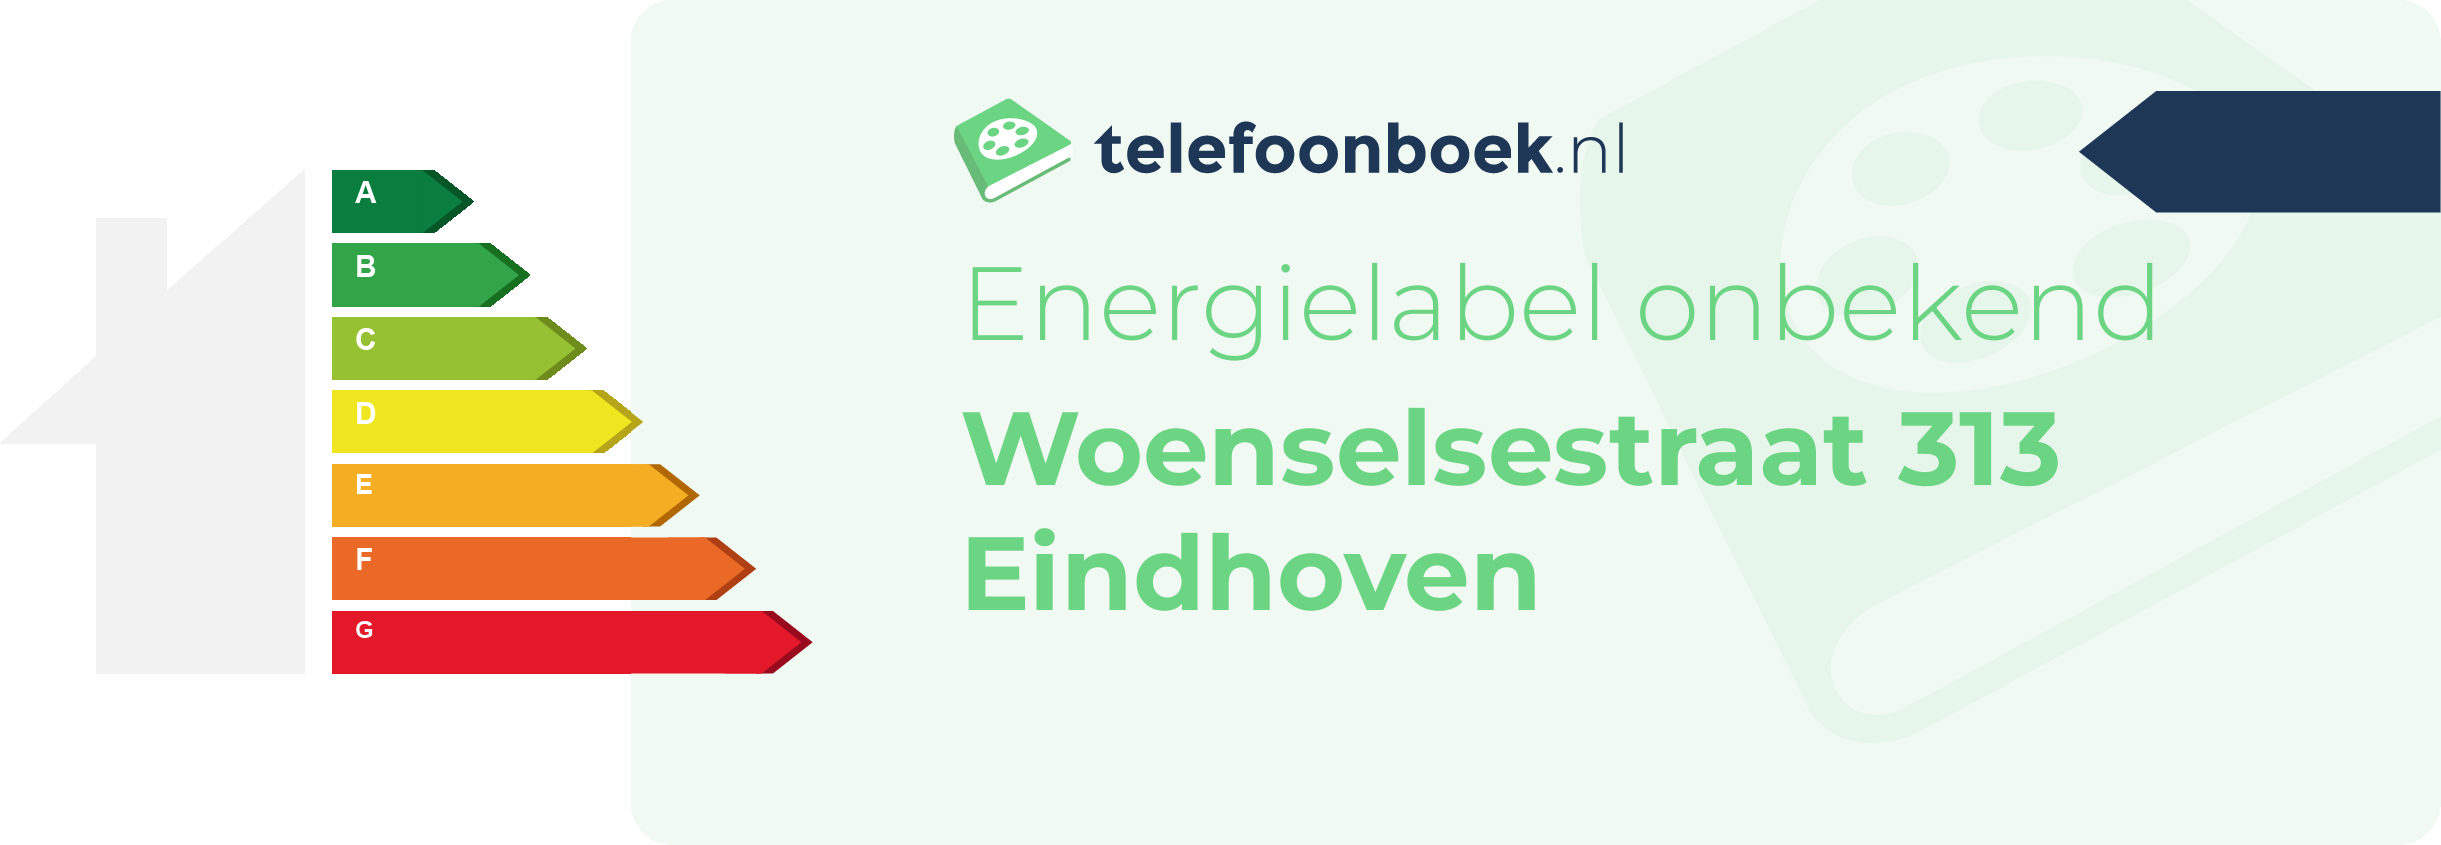 Energielabel Woenselsestraat 313 Eindhoven